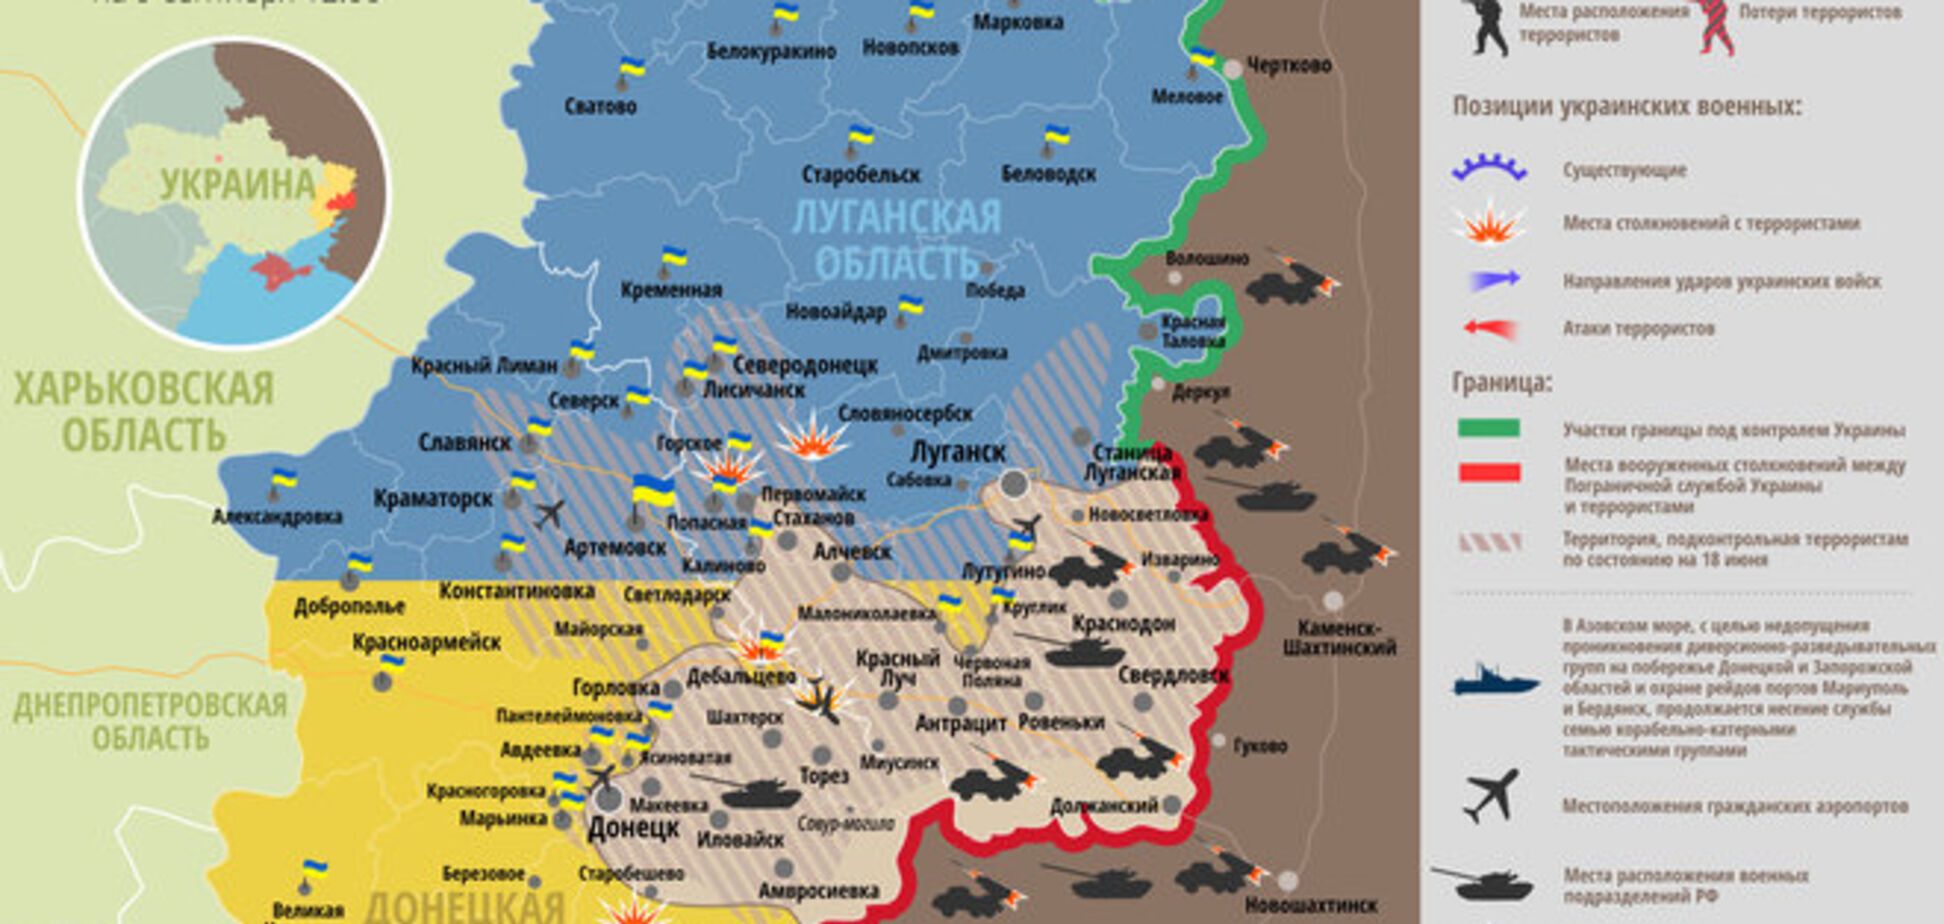   Актуальная карта военных действий на востоке Украины